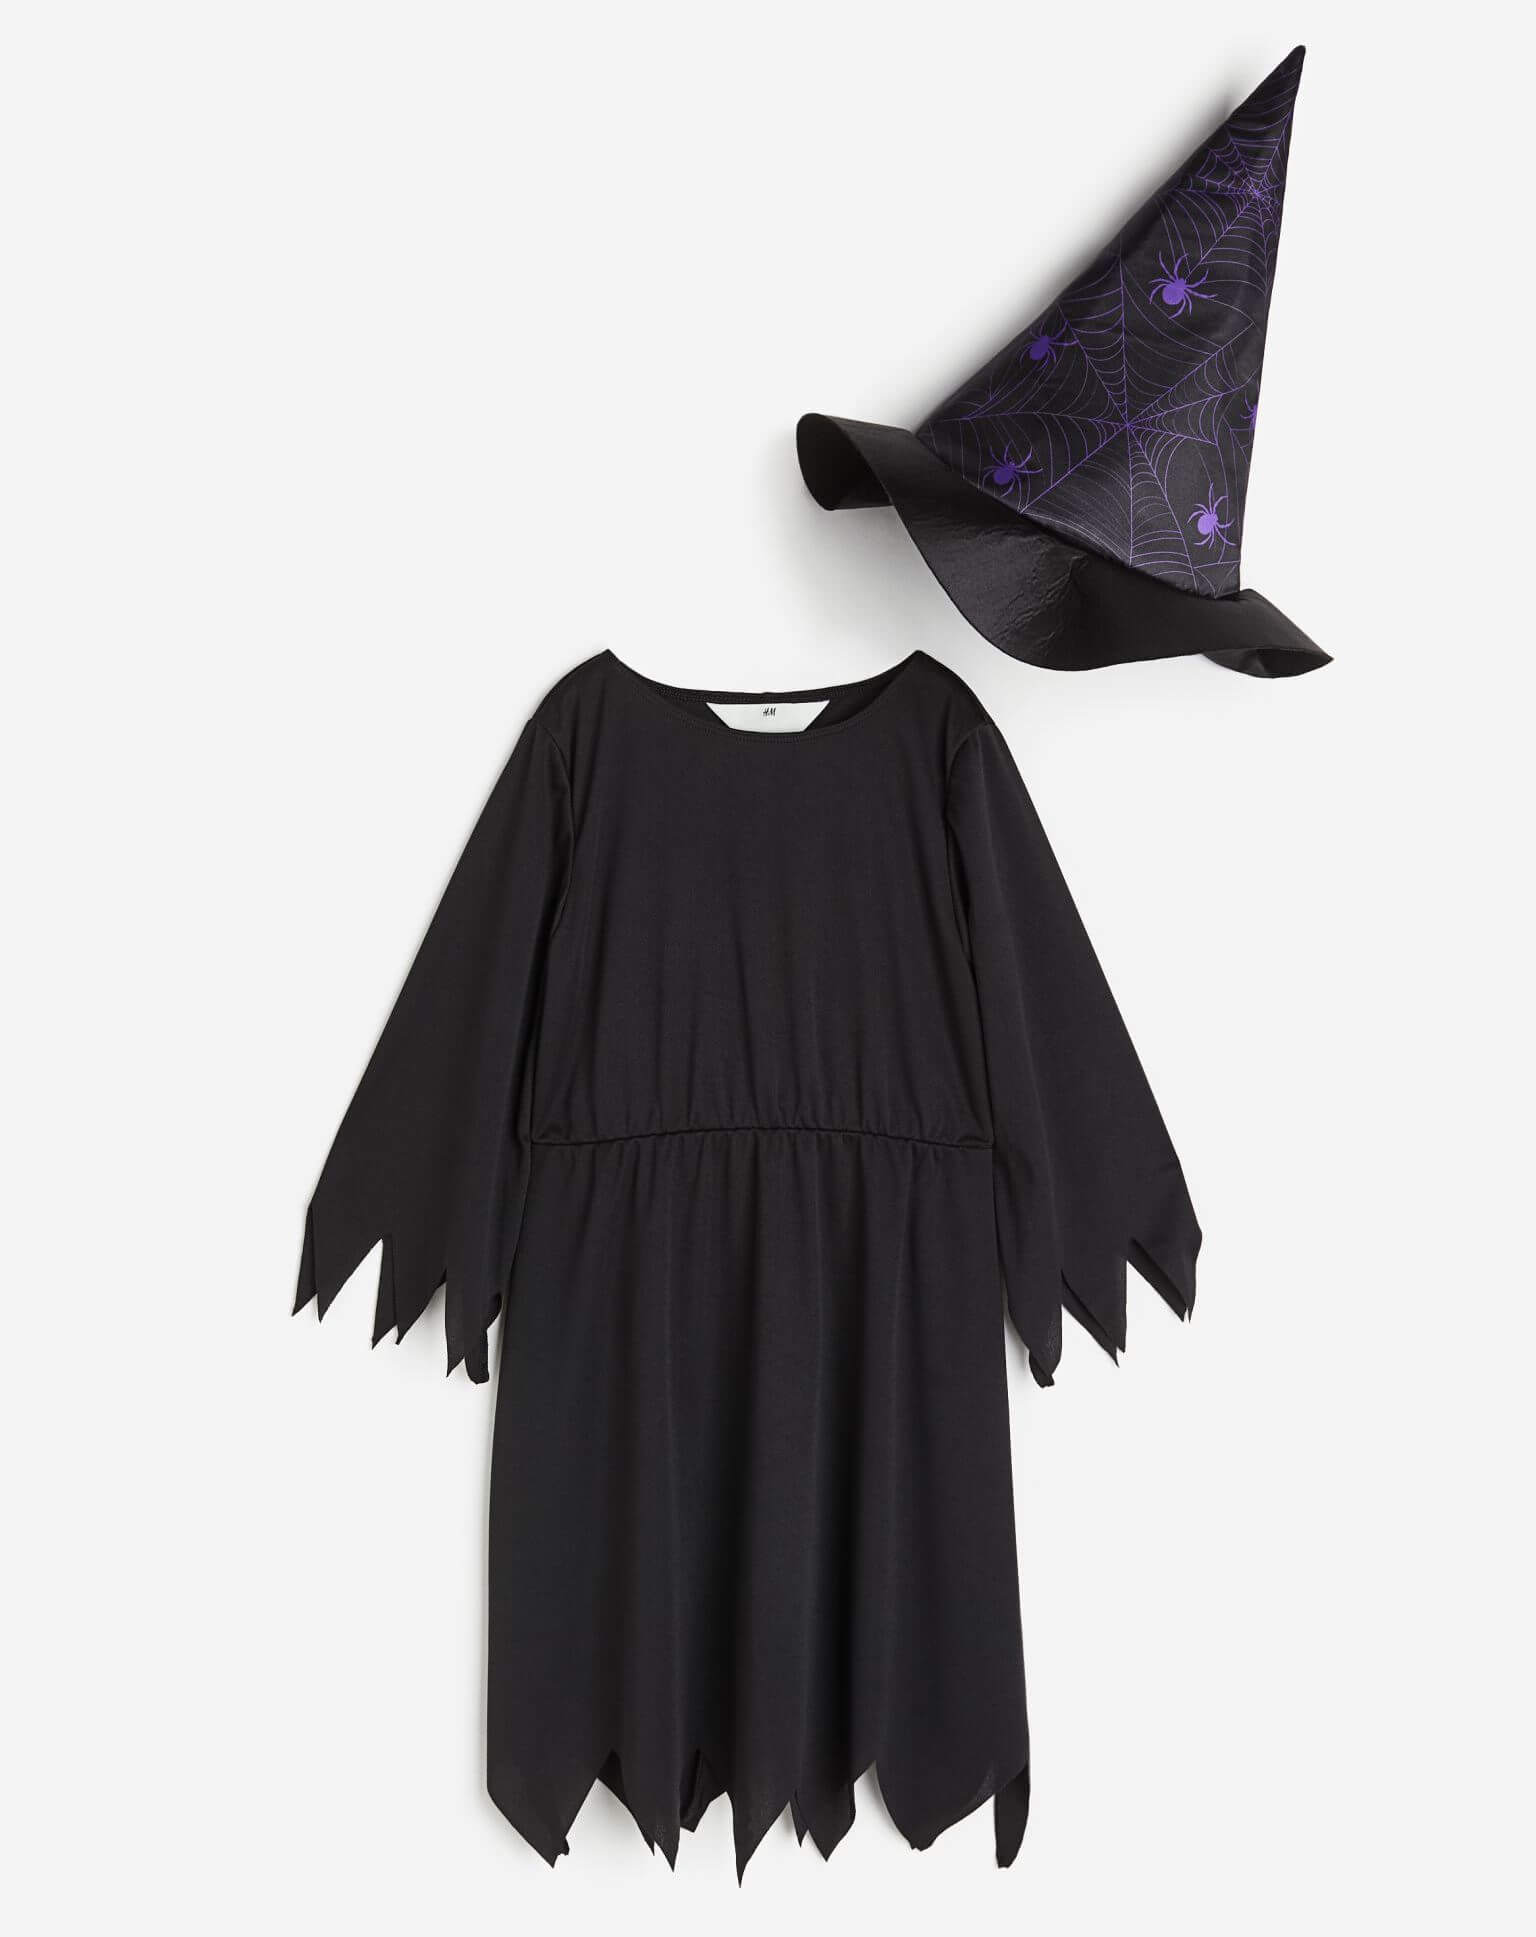 Карнавальный костюм H&M Spiders Witch, черный/фиолетовый фотографии